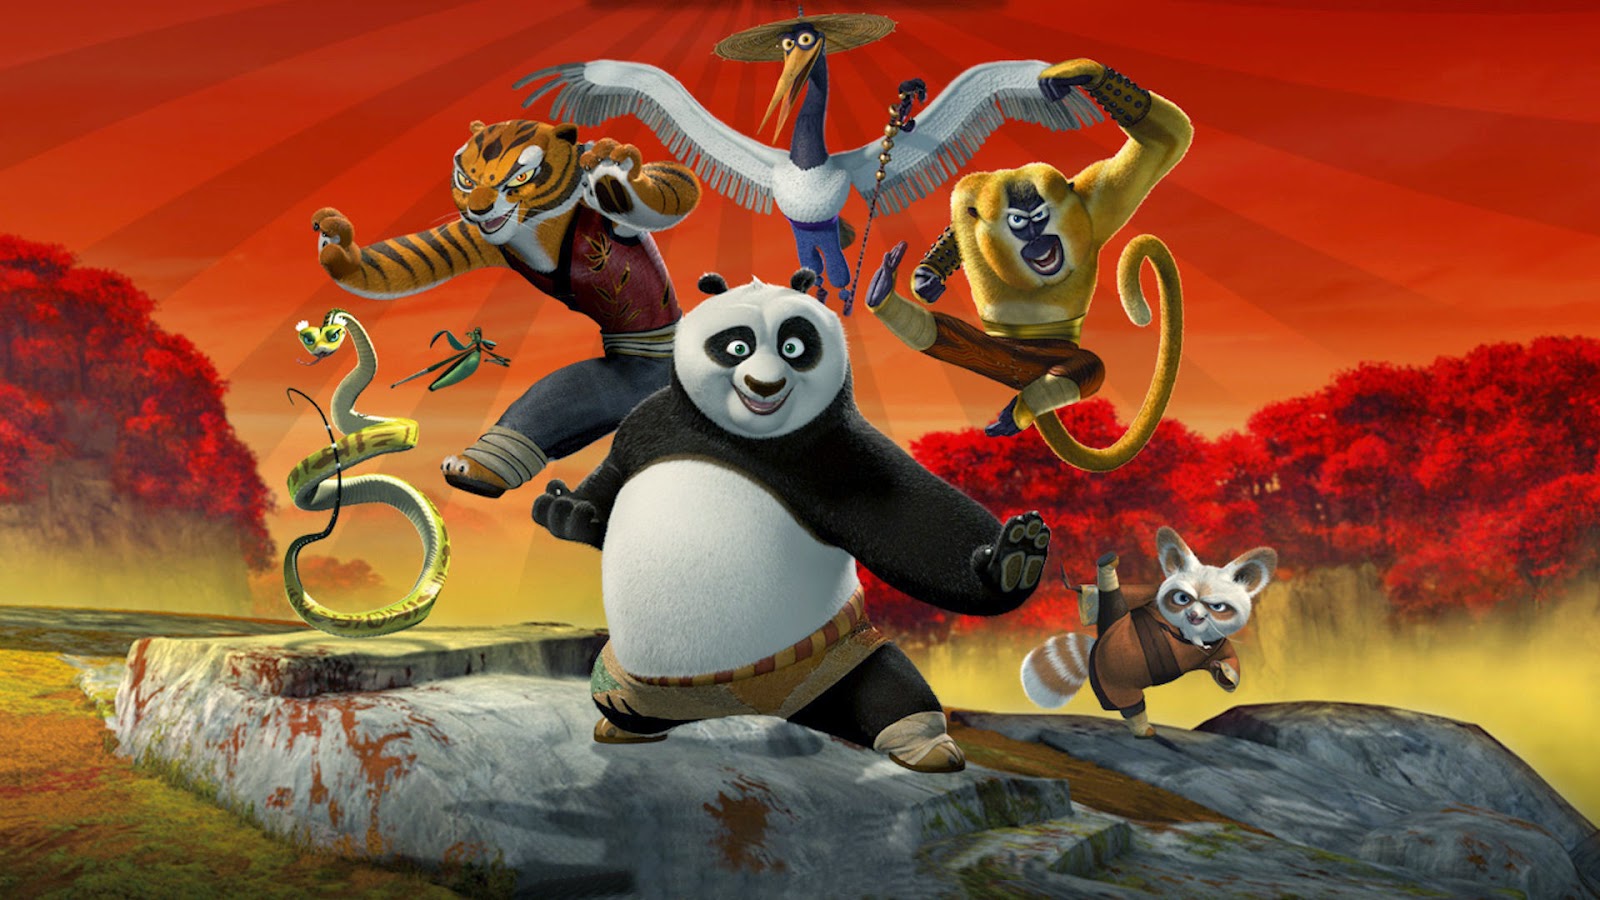 Wallpaper Atau DP BBM Kungfu Panda 2 HD Khusus Android 2015